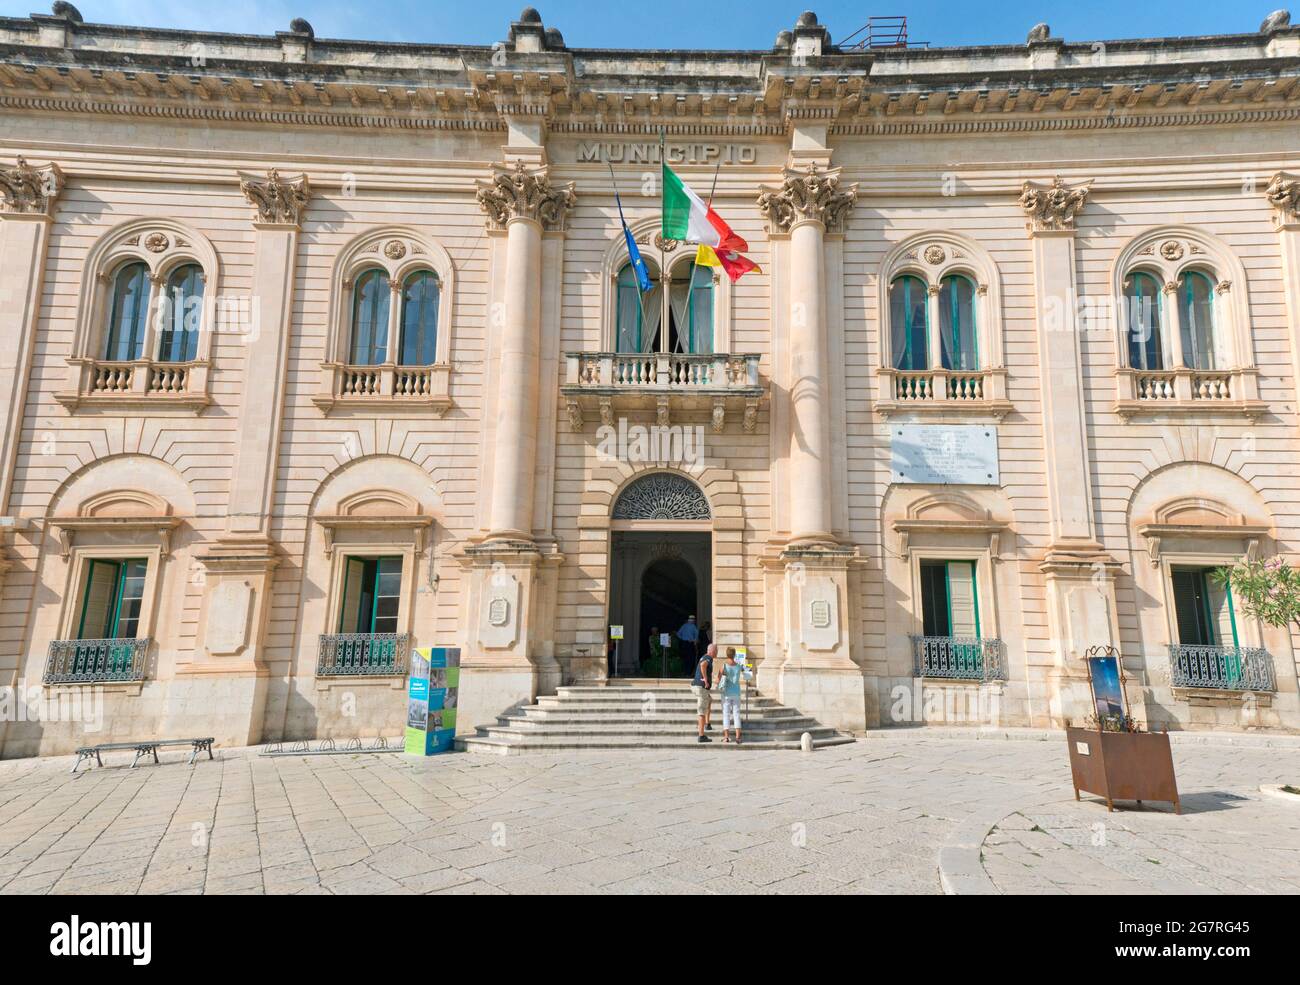 El ayuntamiento de la ciudad barroca de Scicli. Ragusa, Sicilia, Italia Foto de stock